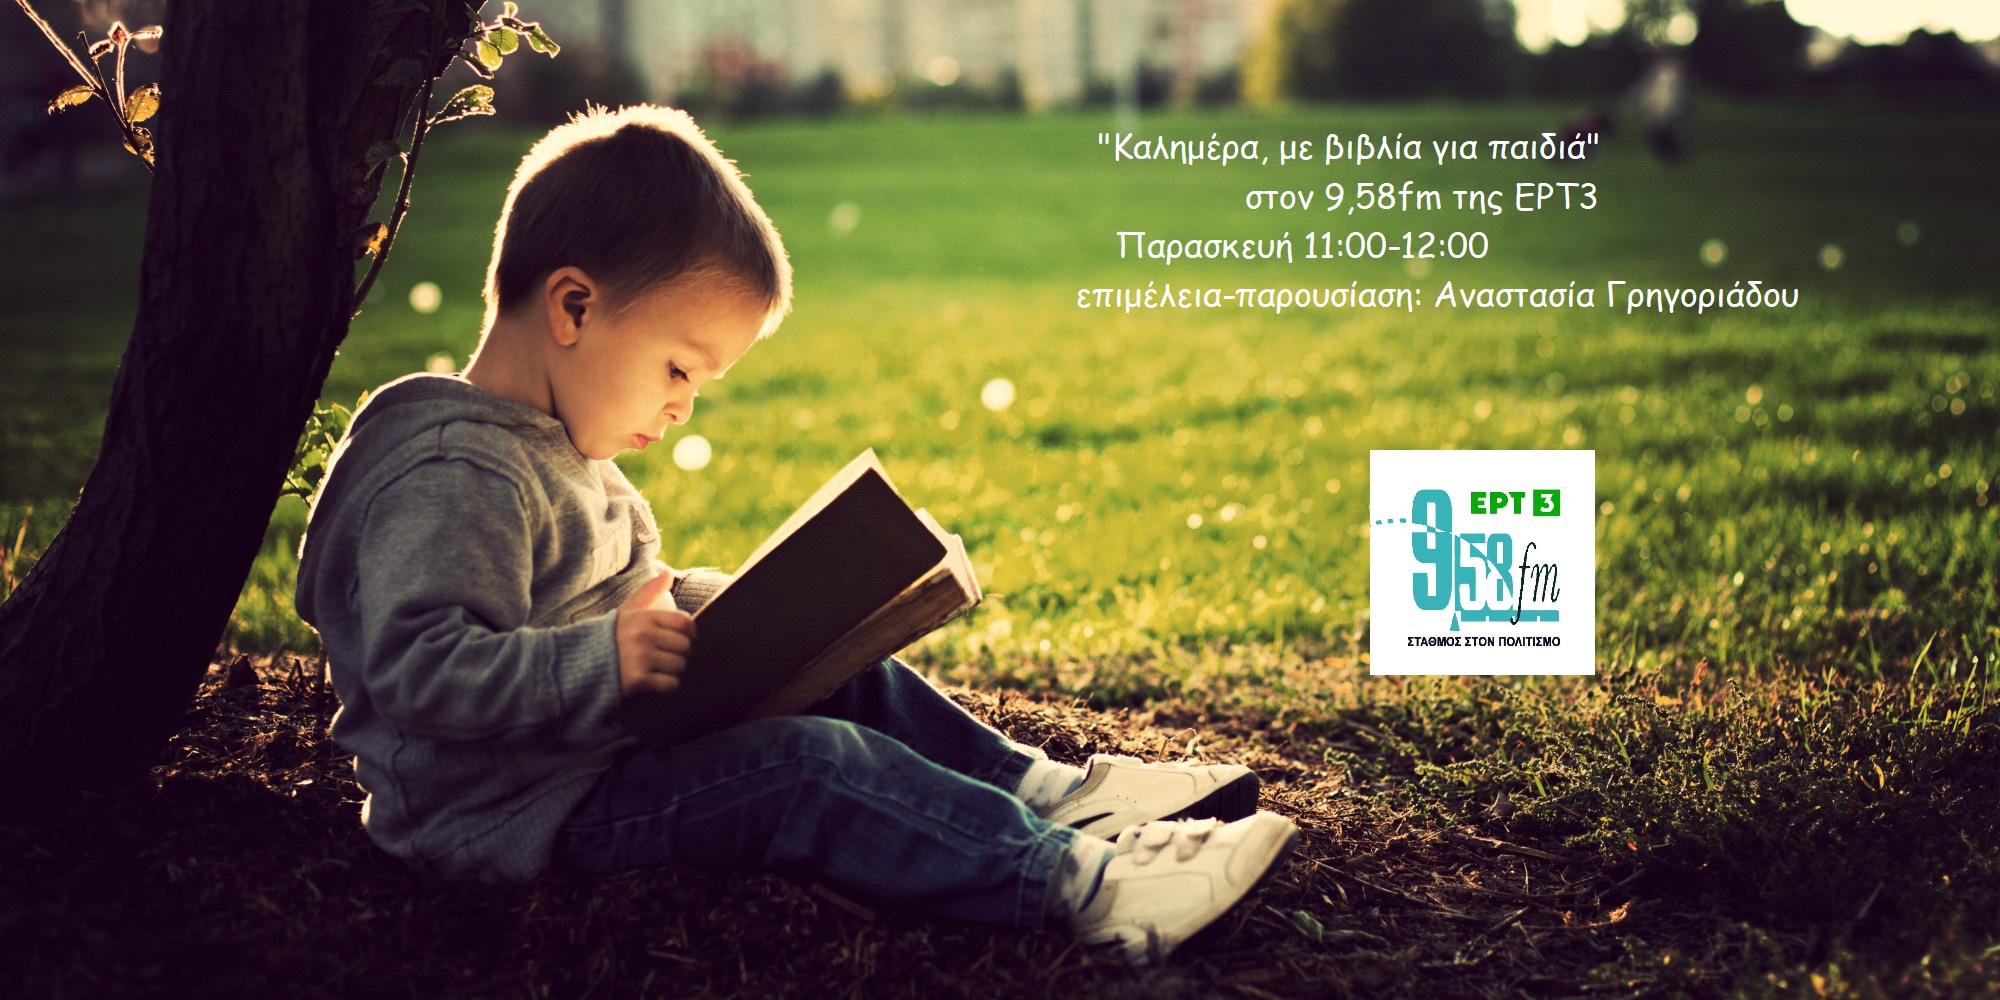 29Οκτ2021 – Καλημέρα με Βιβλία για Παιδιά – “Ένα σχολείο ταρακουνημένο”, Άλκηστη Χαλικιά / Ίρις Σαμαρτζή